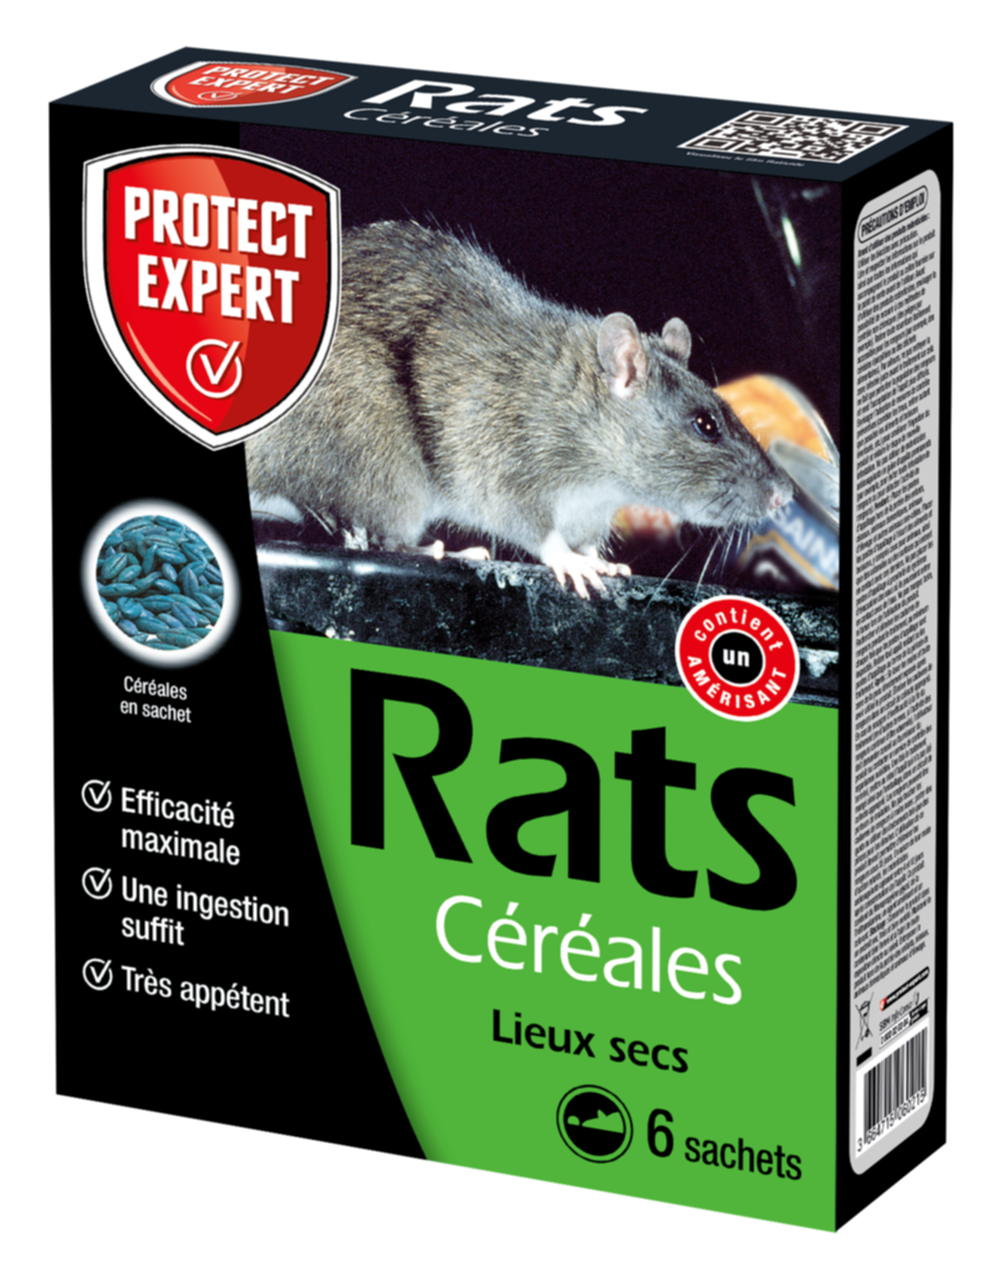 Traitement anti-nuisible céréales rats 150gr - PROTECT EXPERT